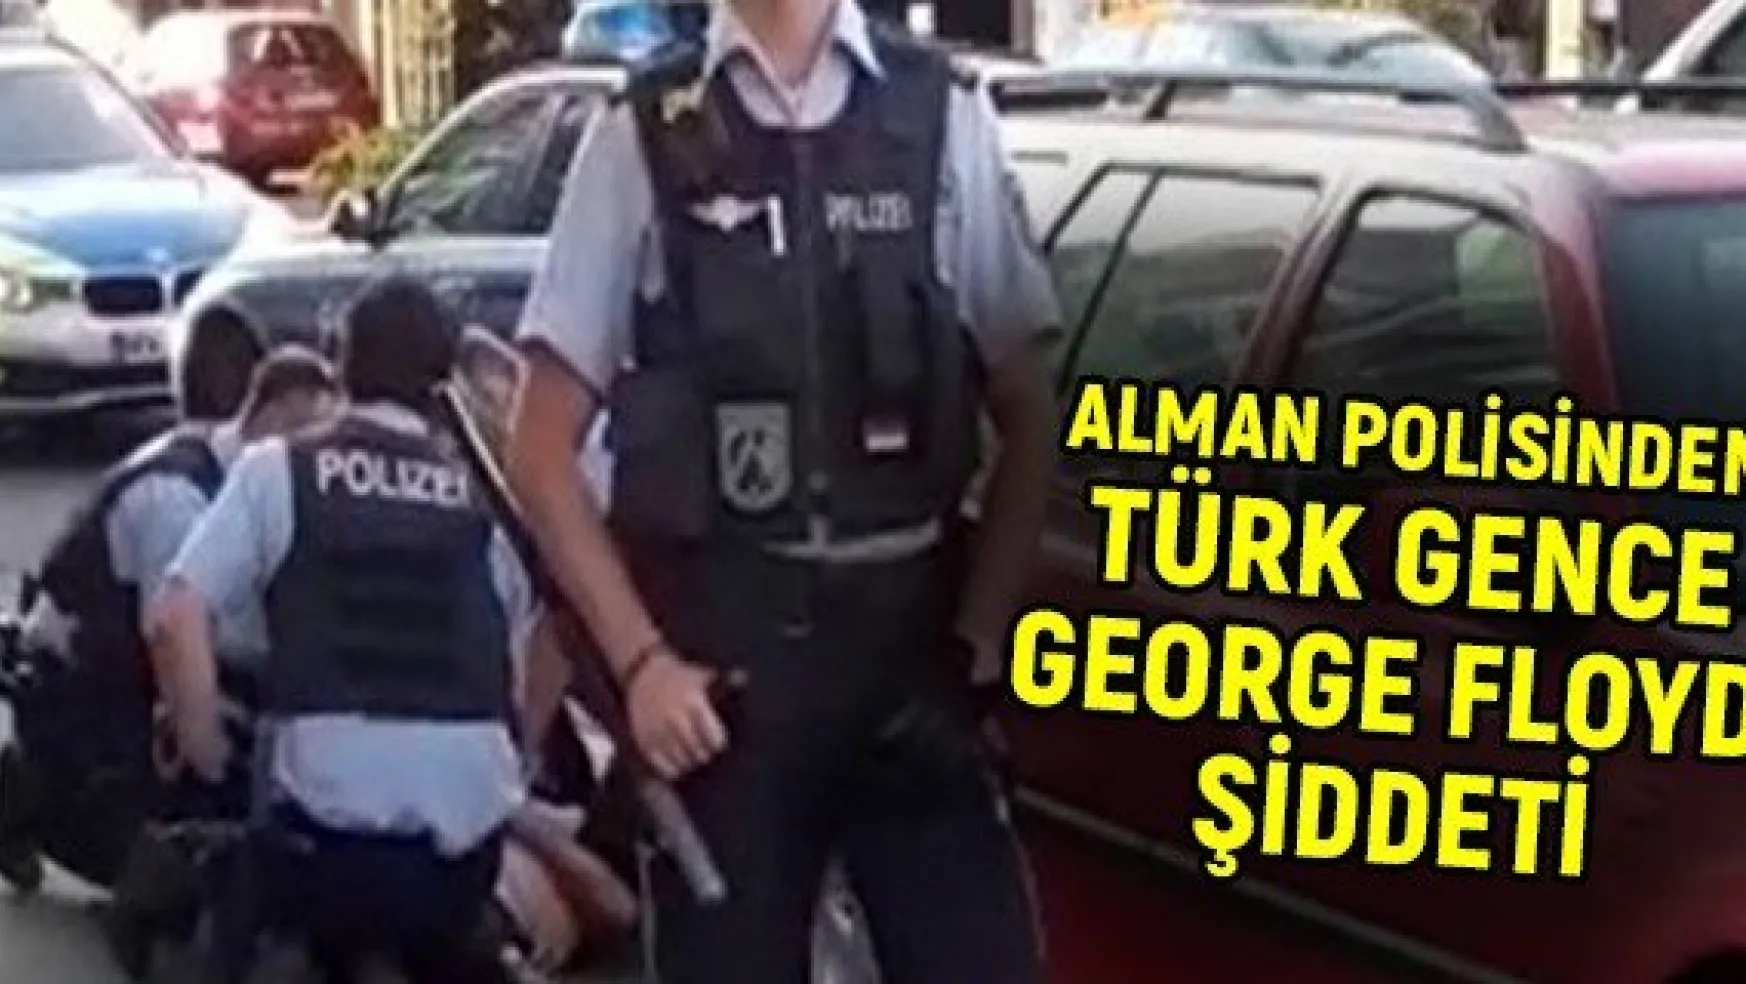 Alman polisinden Türk gence George Floyd şiddeti